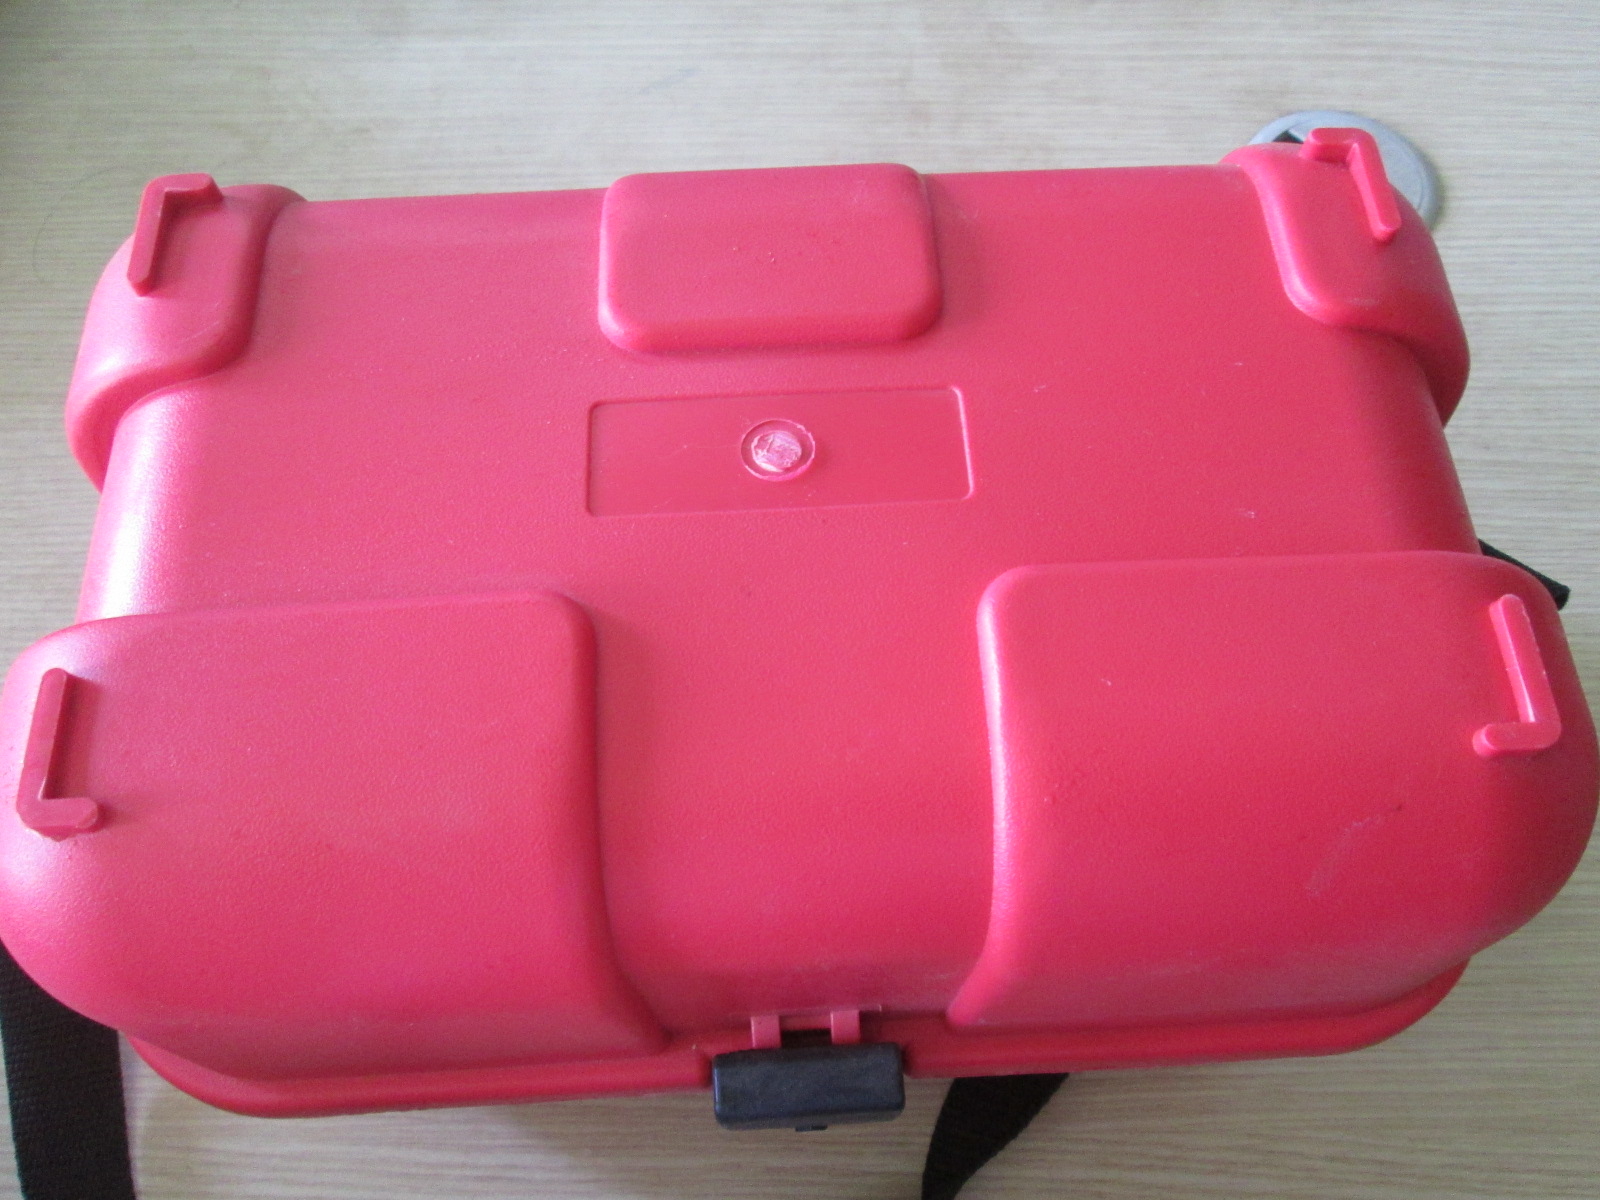  Sử dụng hộp đựng máy thủy bình sokkia giúp bảo vệ và thuận tiện di chuyển